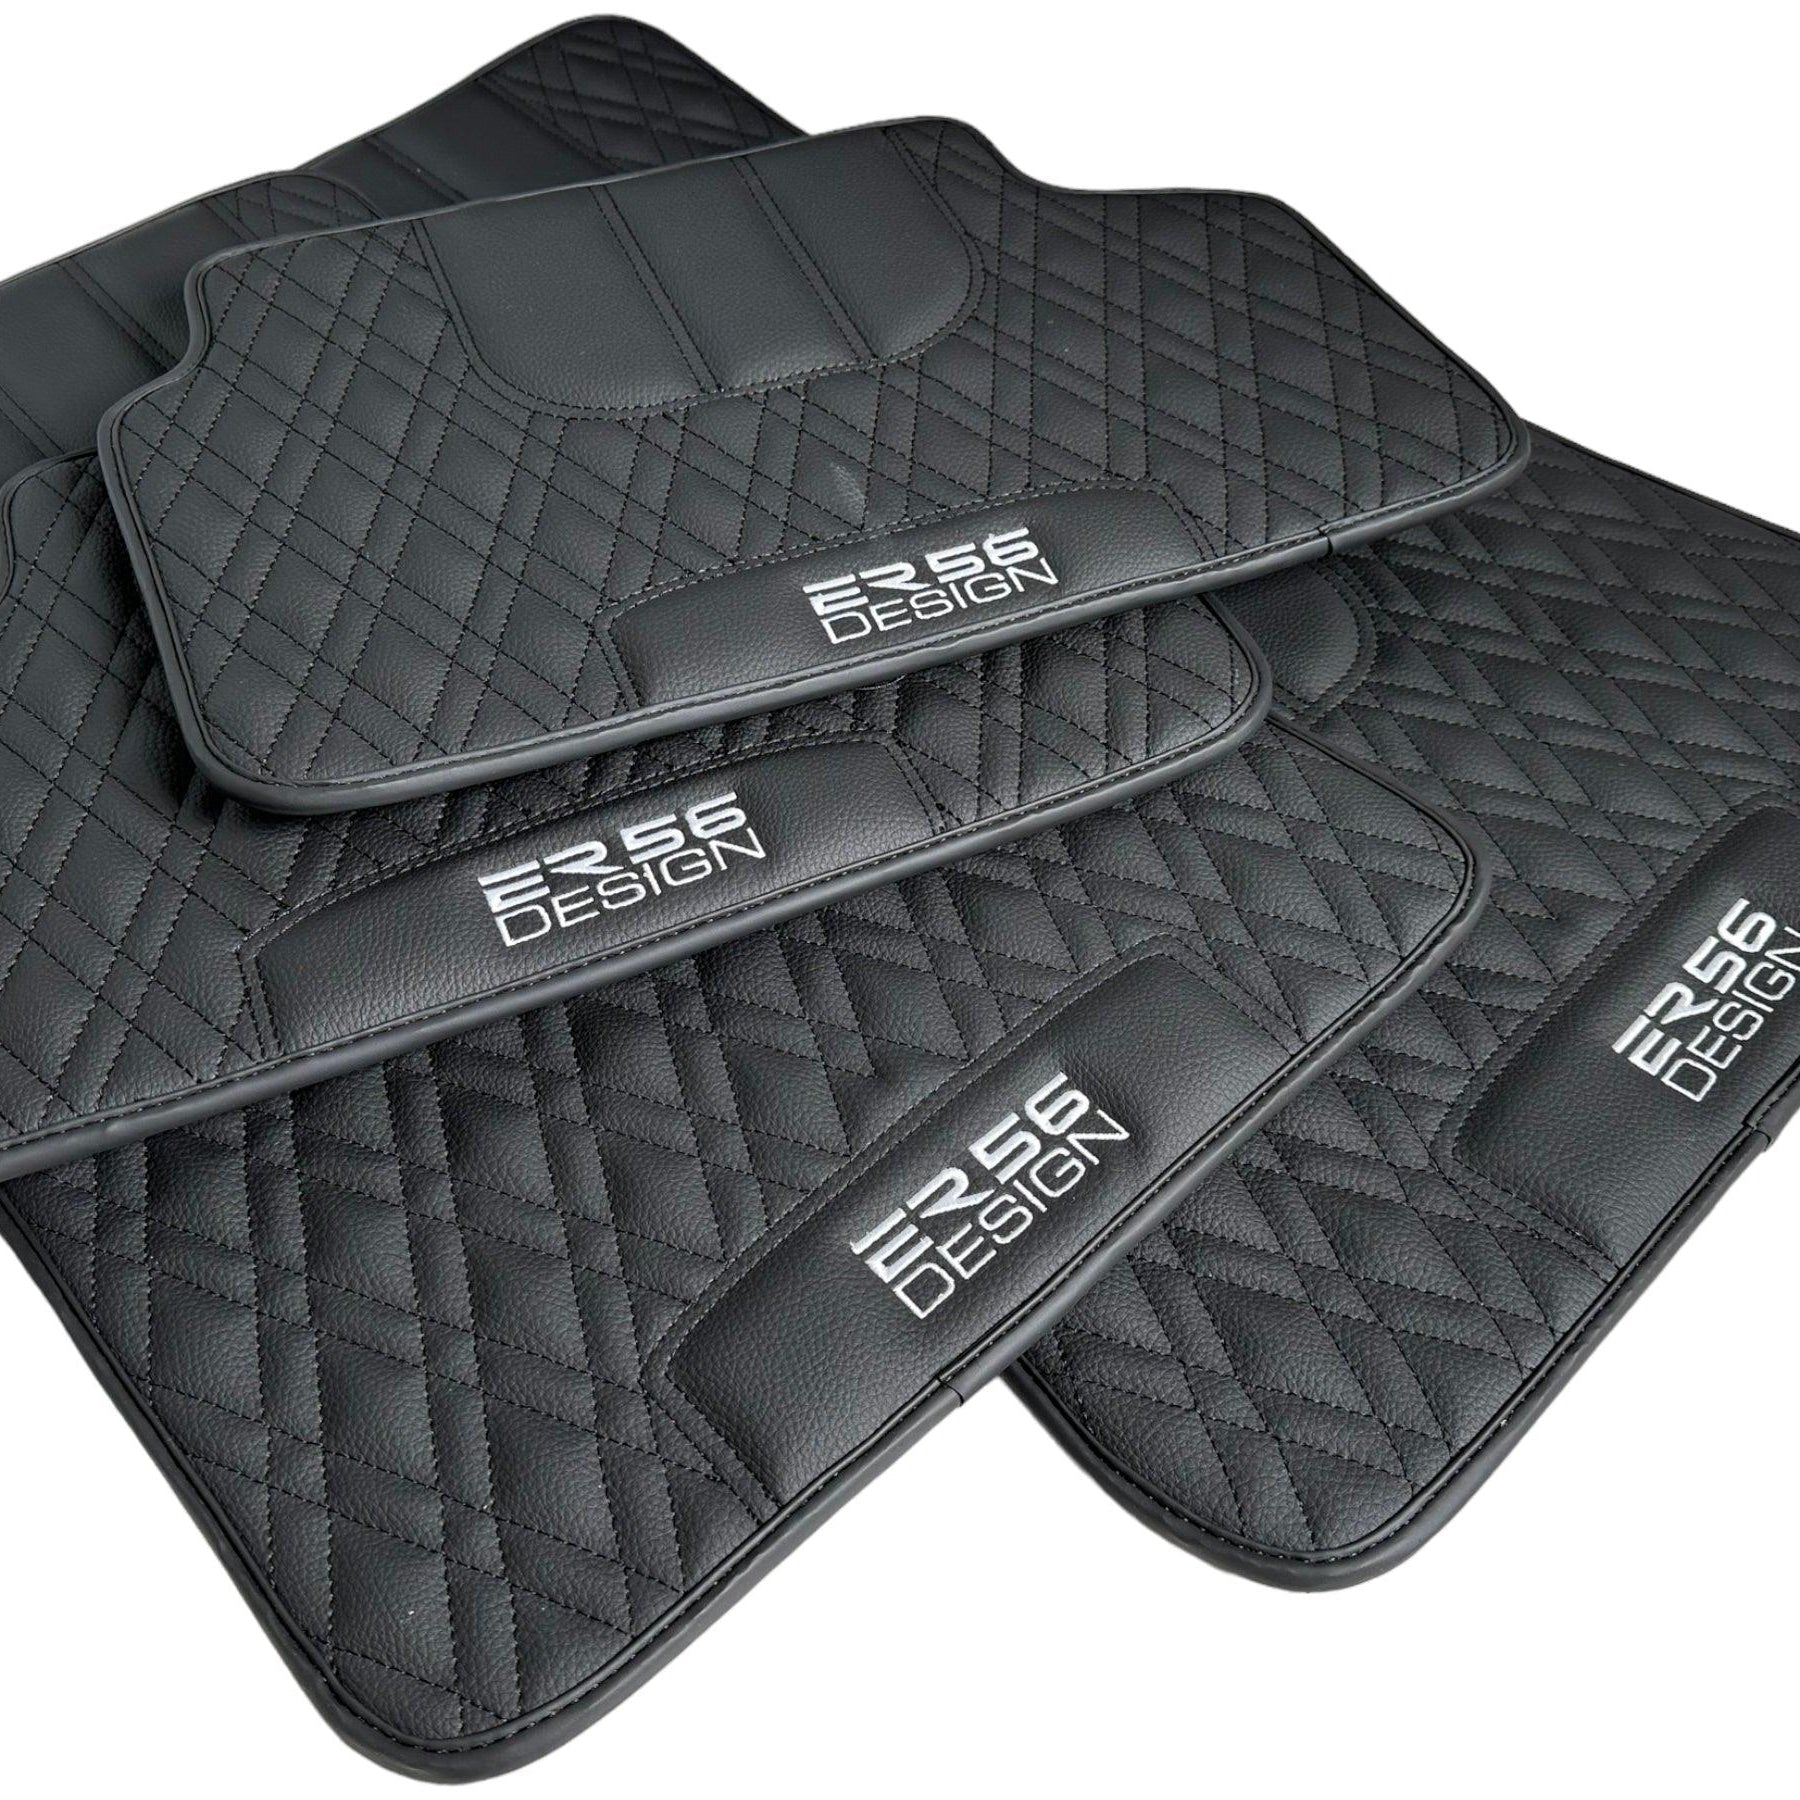 Floor Mats For BMW 3 Series E46 4-door Sedan Black Leather Er56 Design - AutoWin